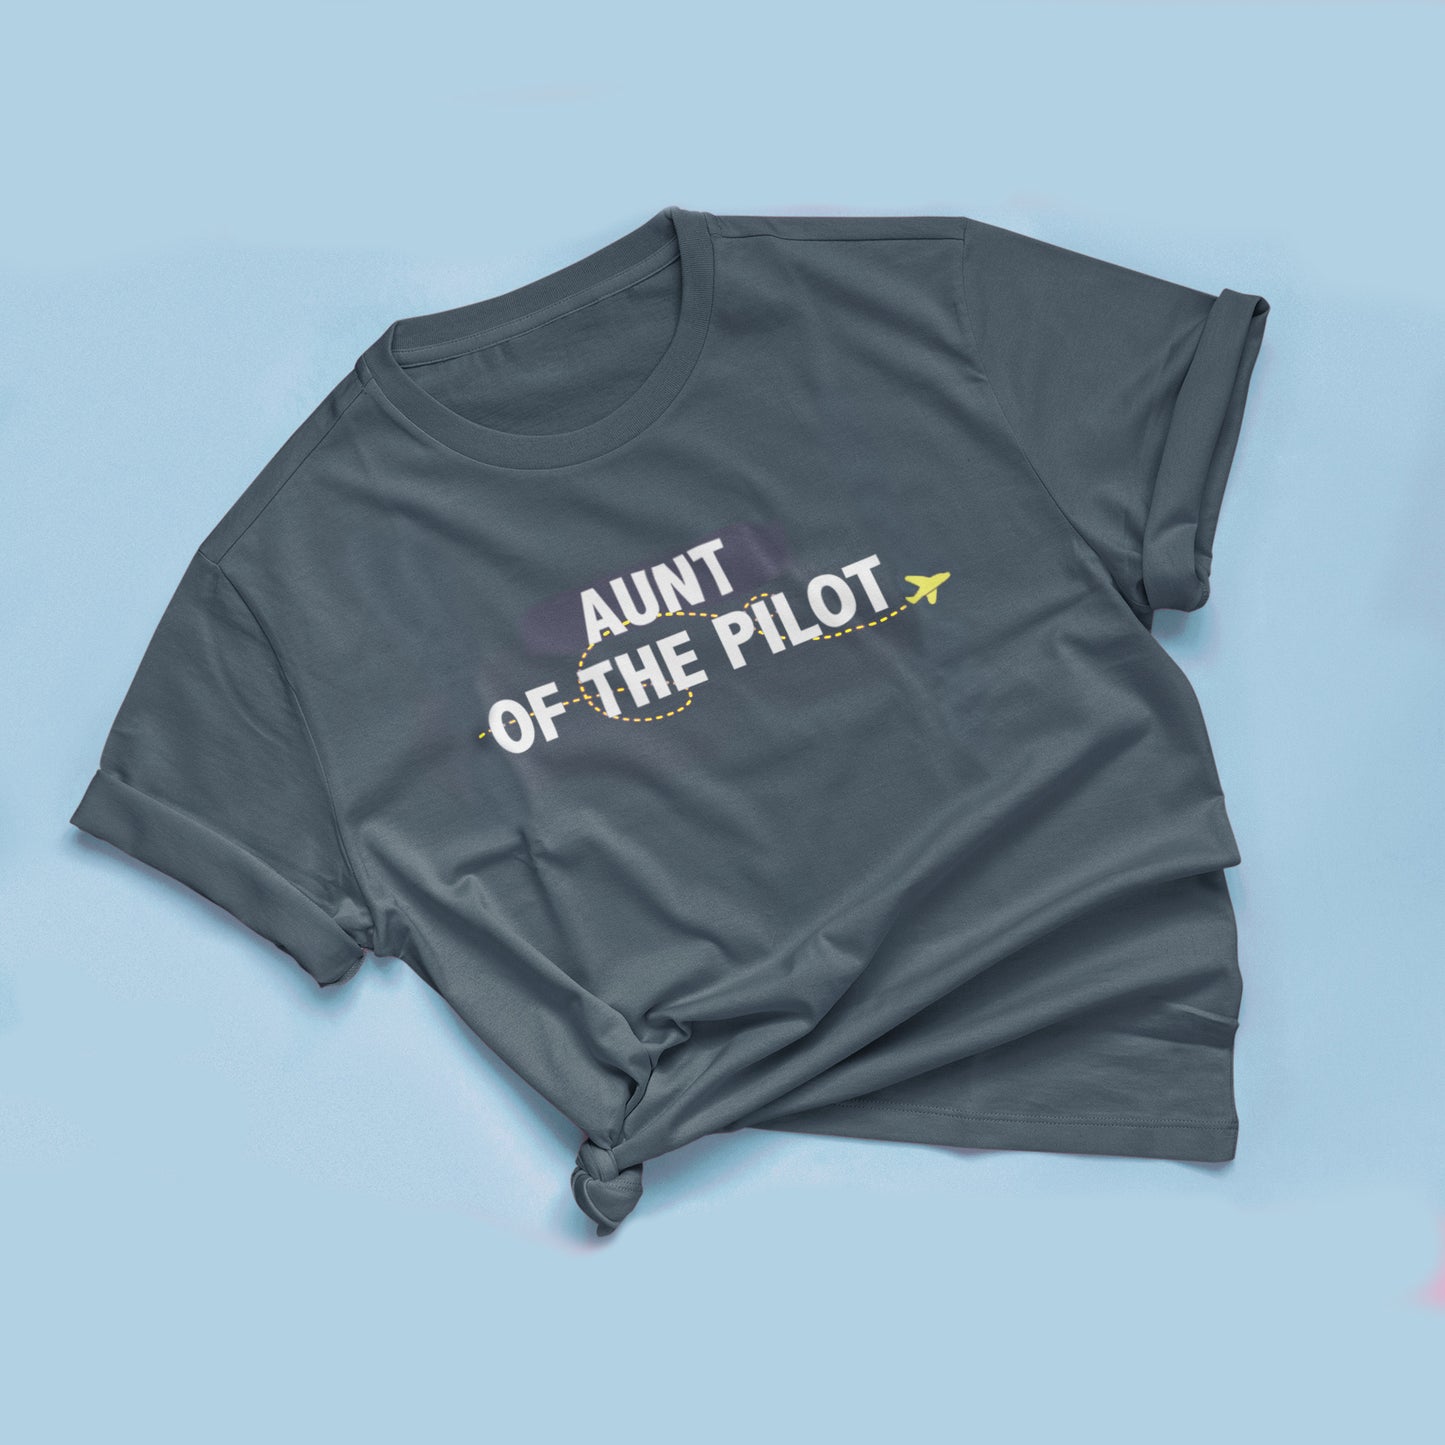 Aunt of the/a Pilot T-shirt